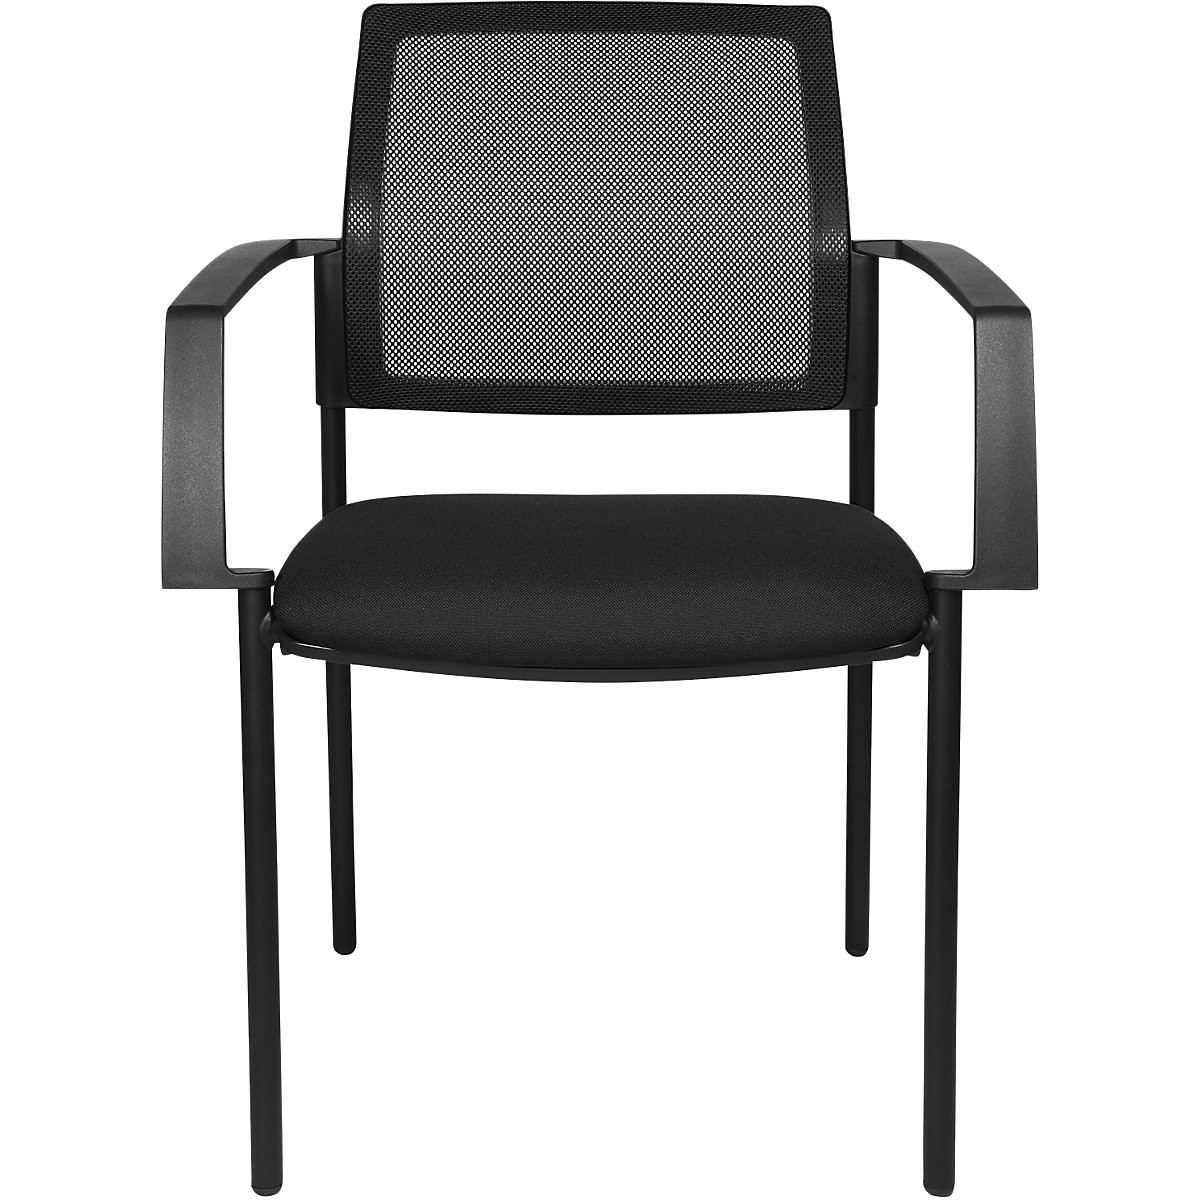 Složiva stolica s mrežastim naslonom – Topstar, 4 noge, pak. 2 kom., sjedalo u crnoj boji, postolje u crnoj boji